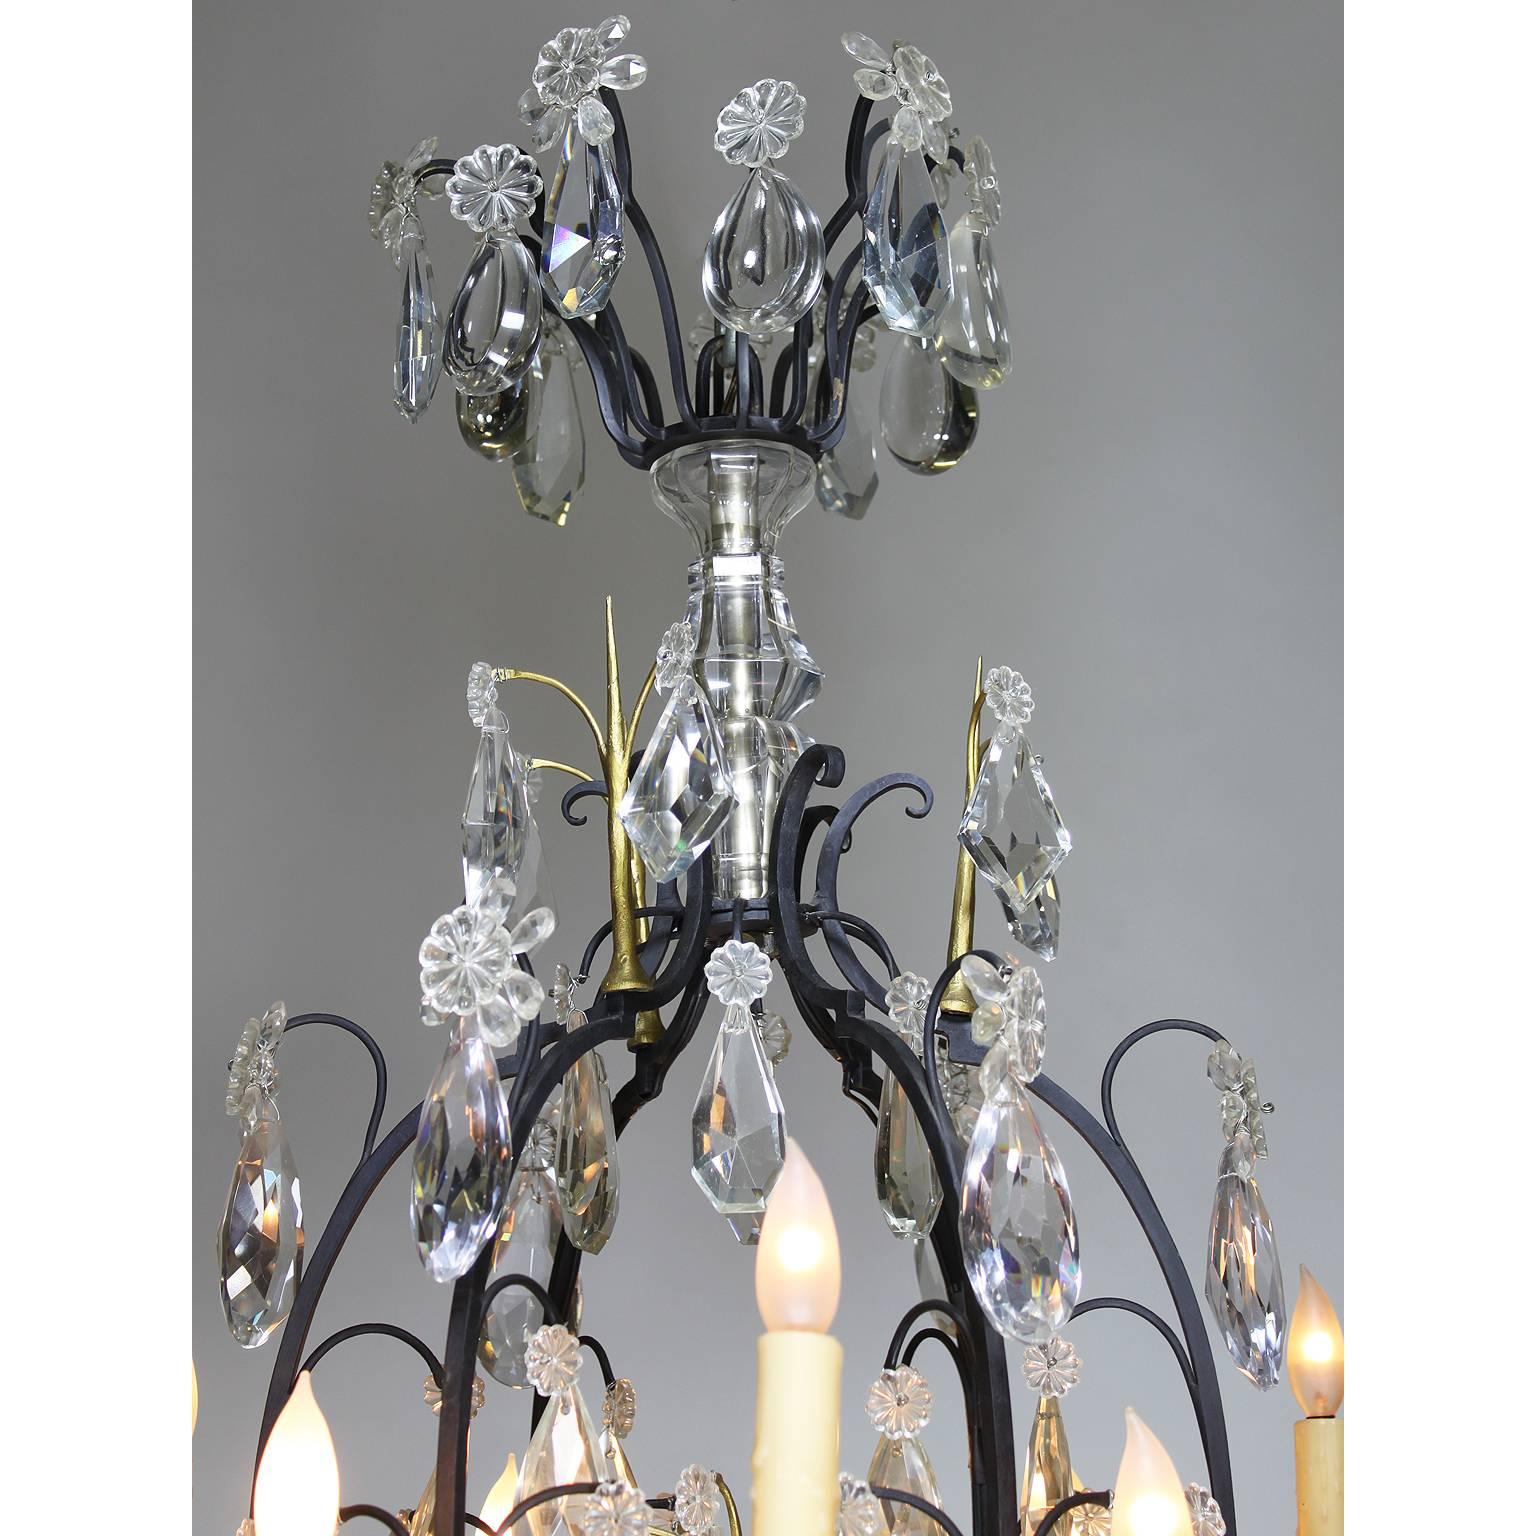 Lustre à dix-huit lumières en cristal (verre taillé) de style Louis XV, en fer forgé et en vermeil, du 19e au 20e siècle. Le cadre peint en noir avec douze bras de bougie et six coupes intérieures en parcellaire doré, le tout électrifié, surmonté de